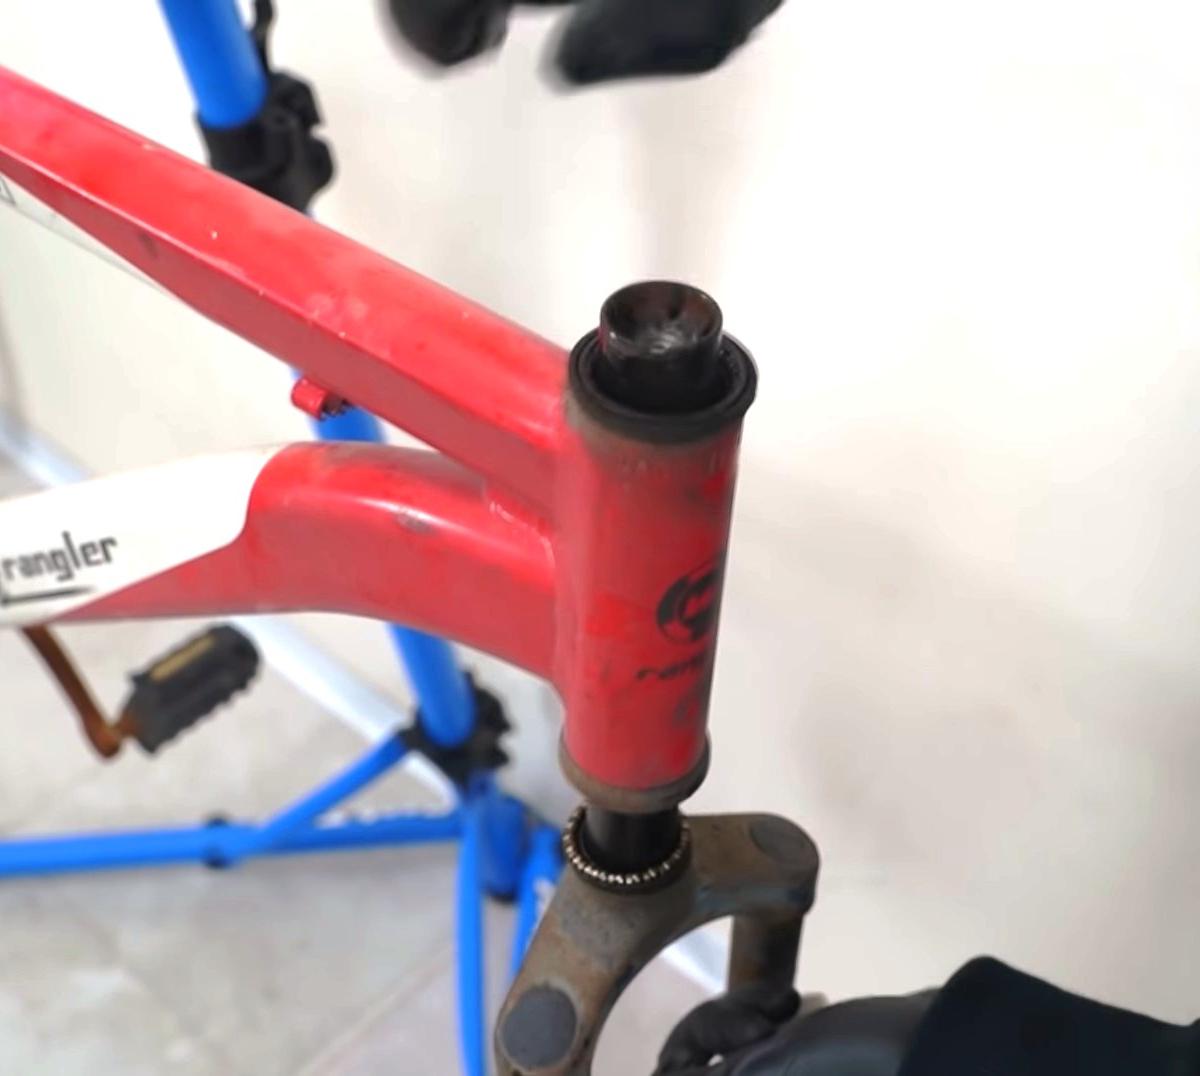 Eski paslı bir bisiklet nasıl restore edilir?